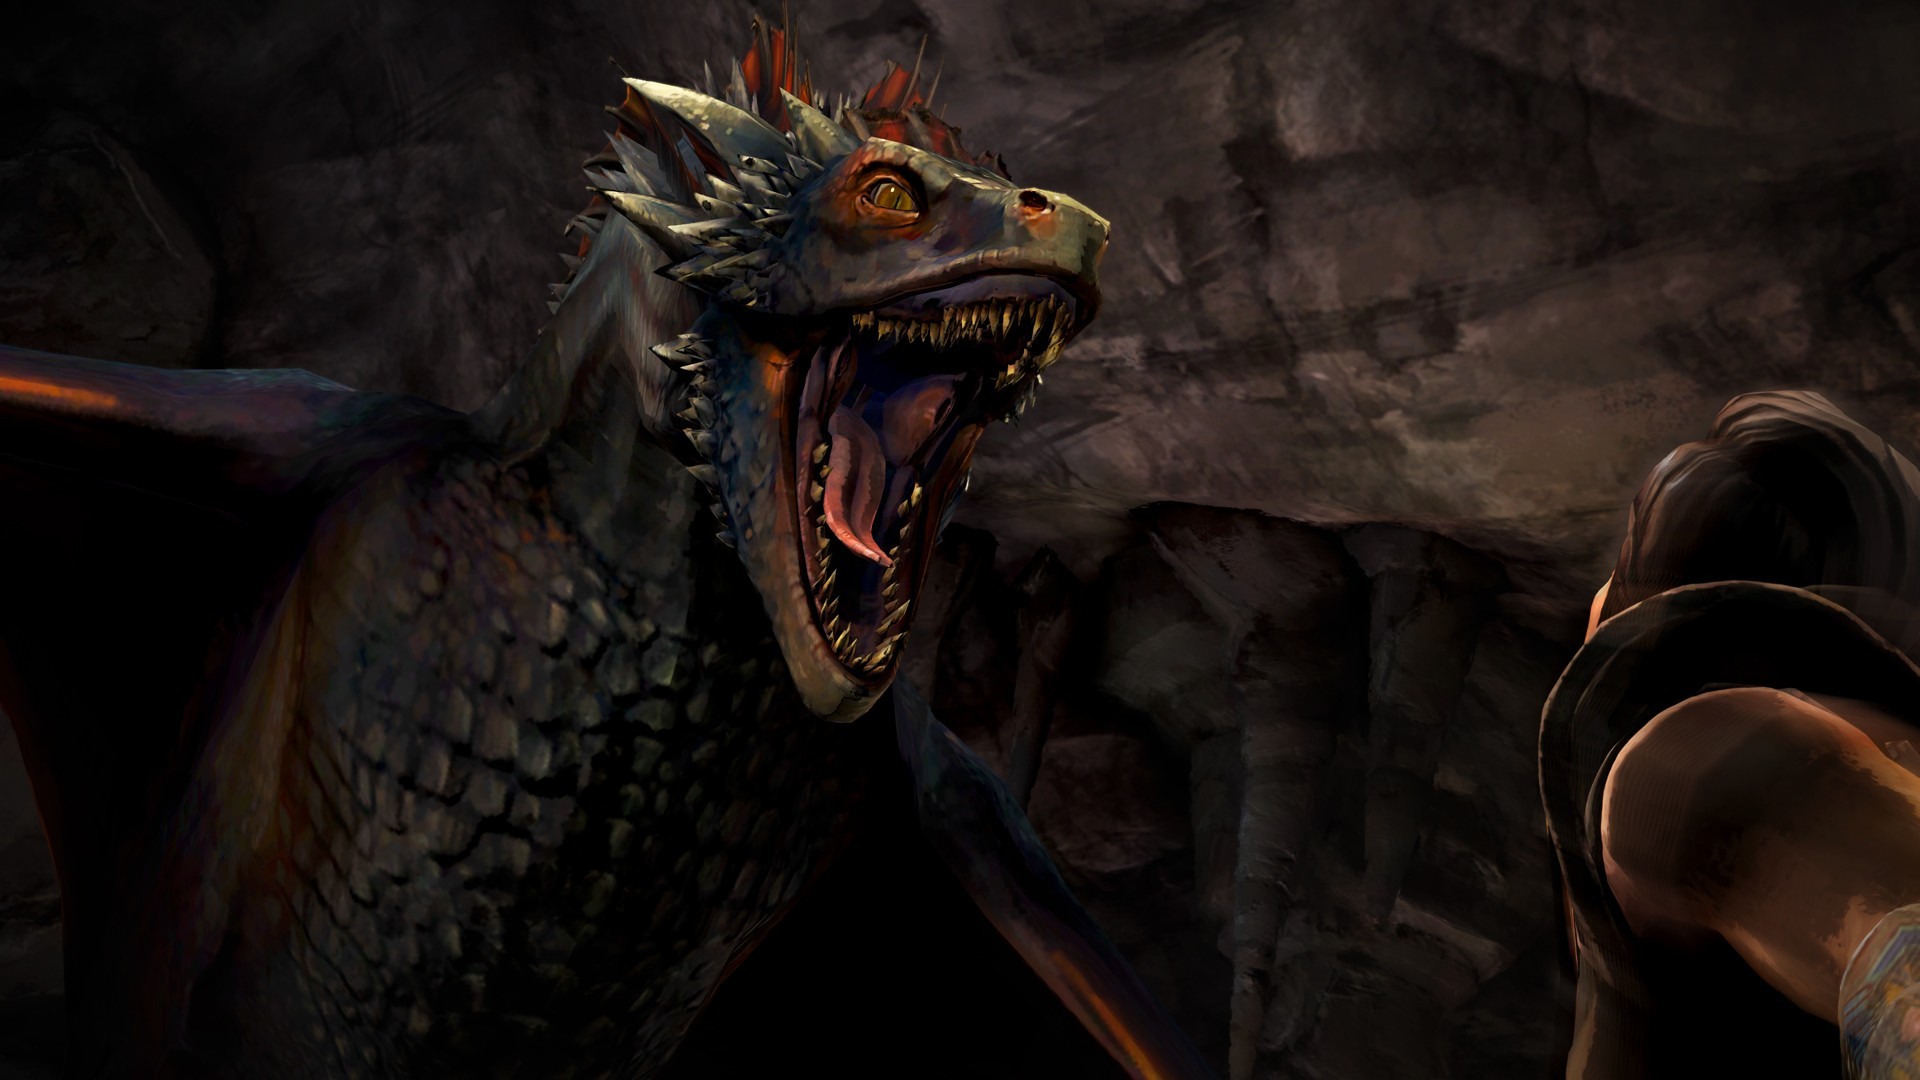 juego de tronos dragon wallpaper,continuar,juego de pc,juego de acción y aventura,demonio,oscuridad